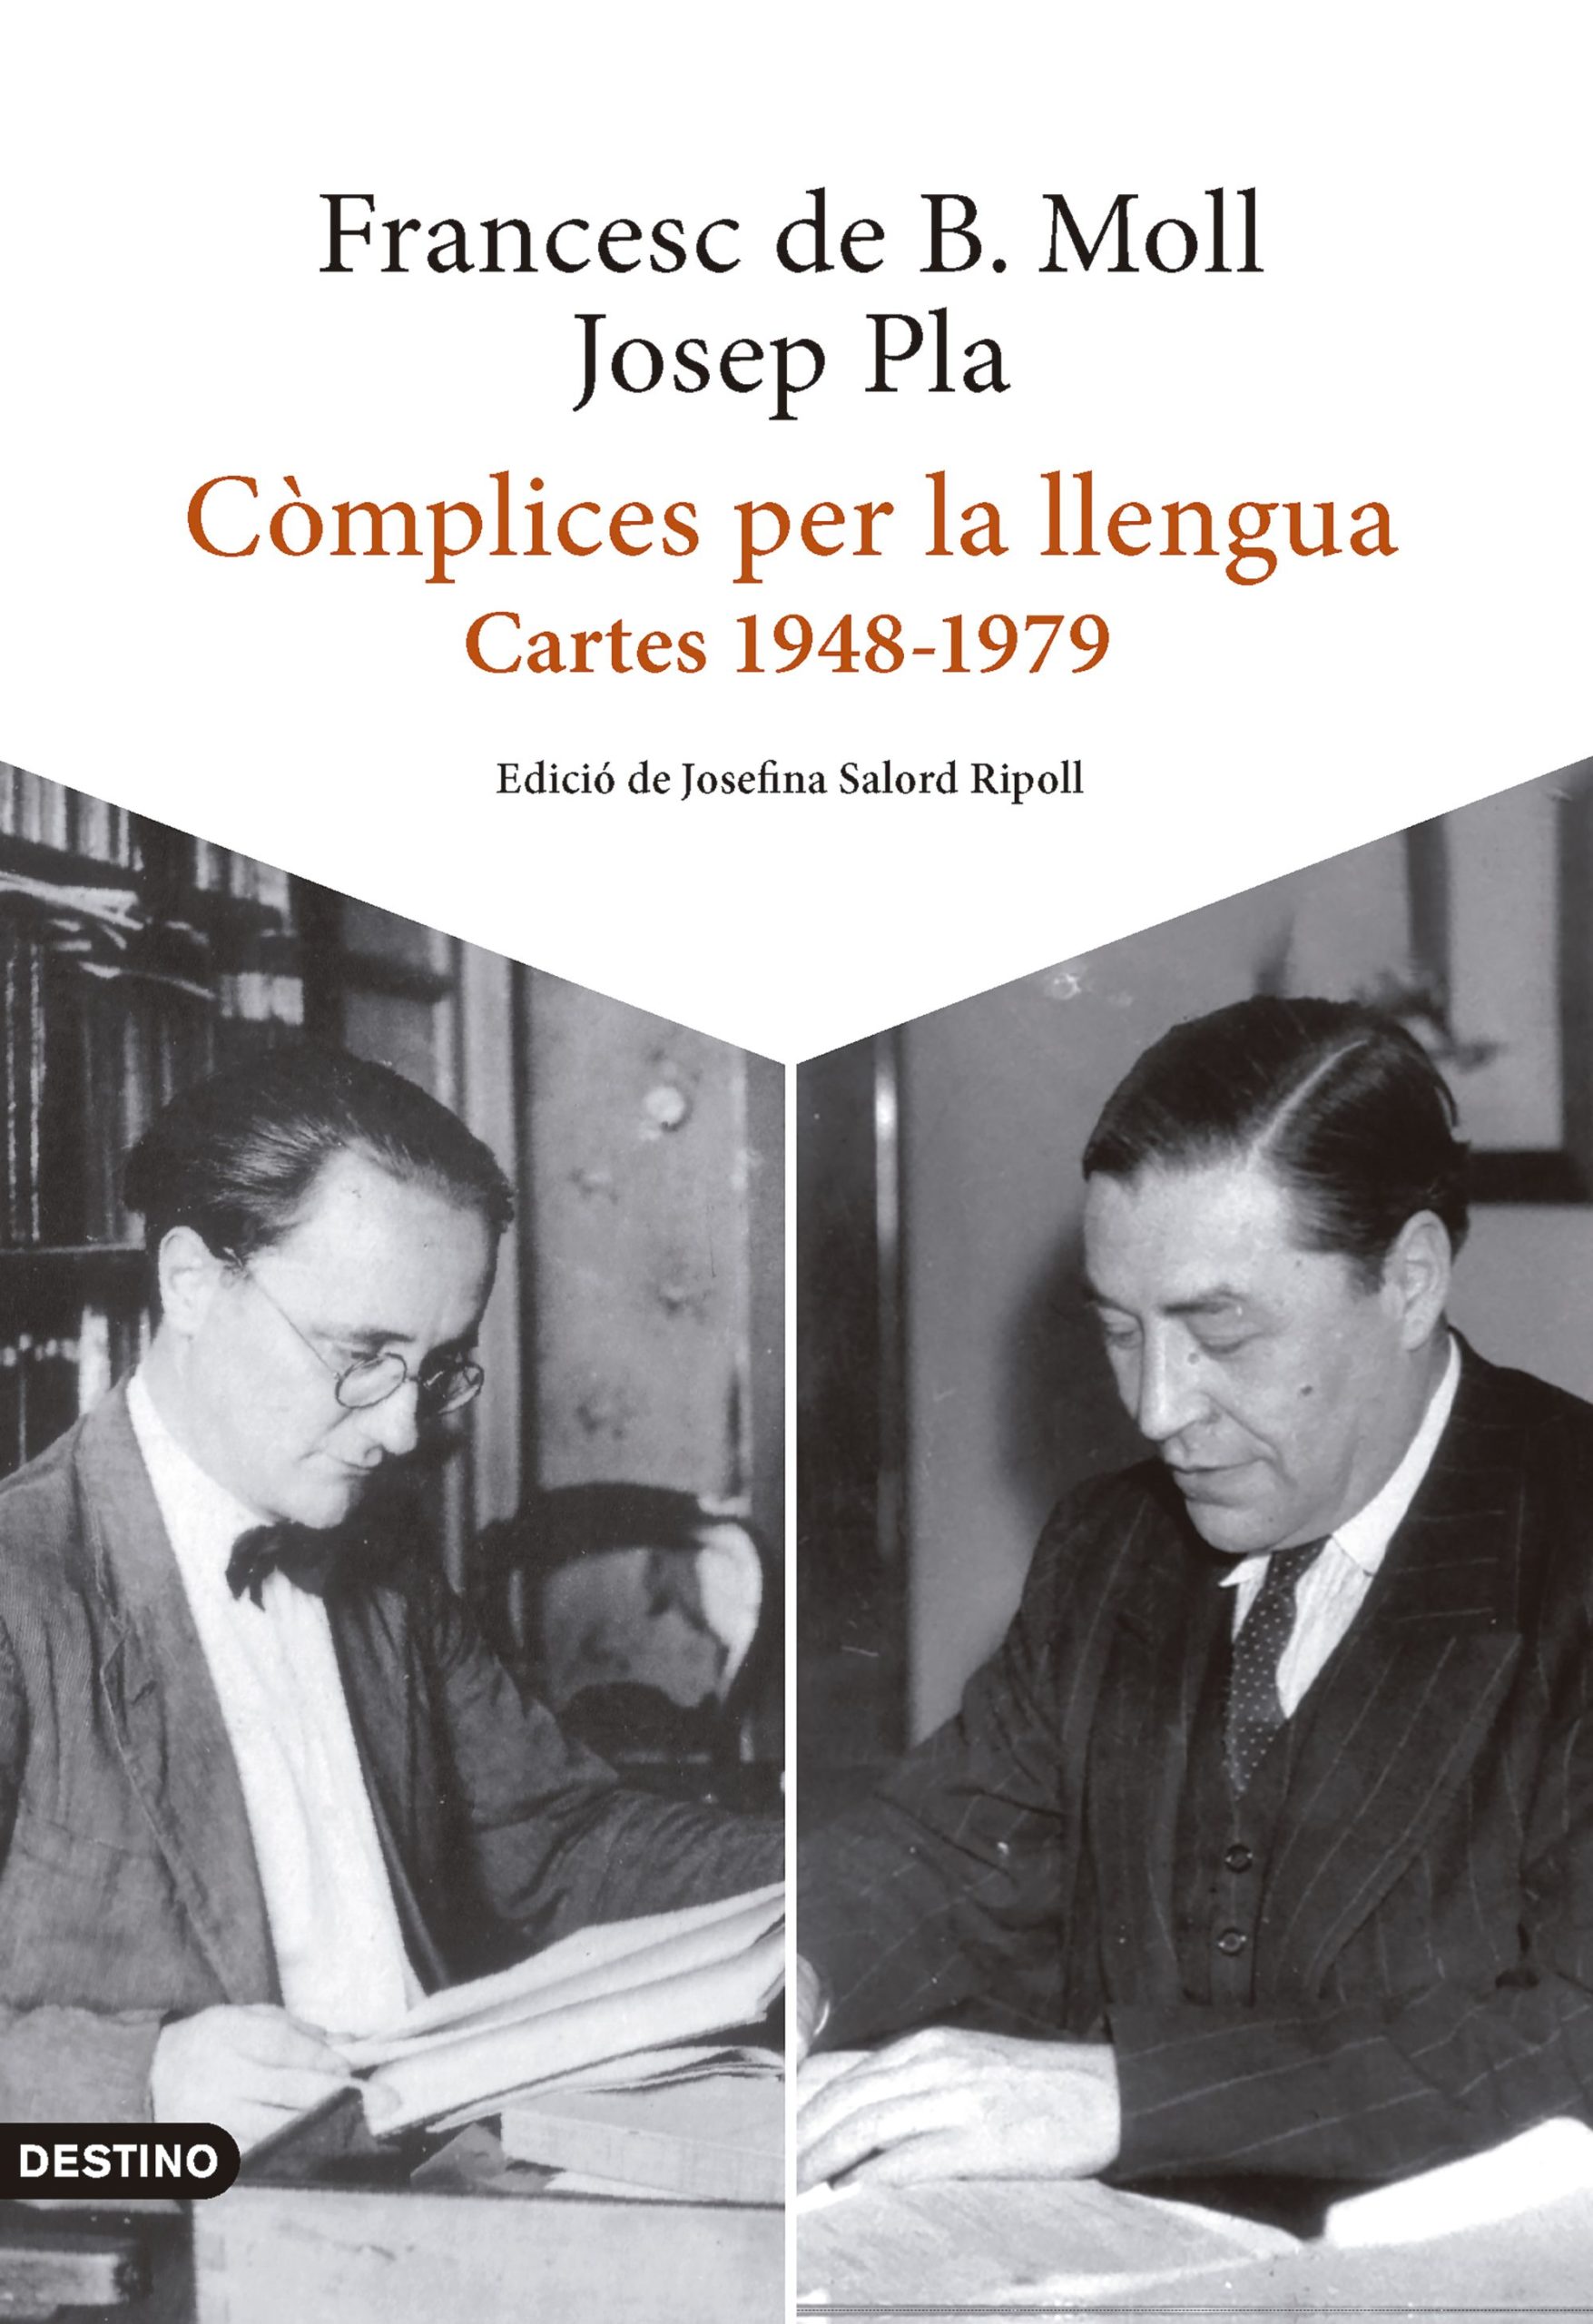 Còmplices per la llengua. Cartes 1948-1979. Josep Pla — Francesc de Borja Moll